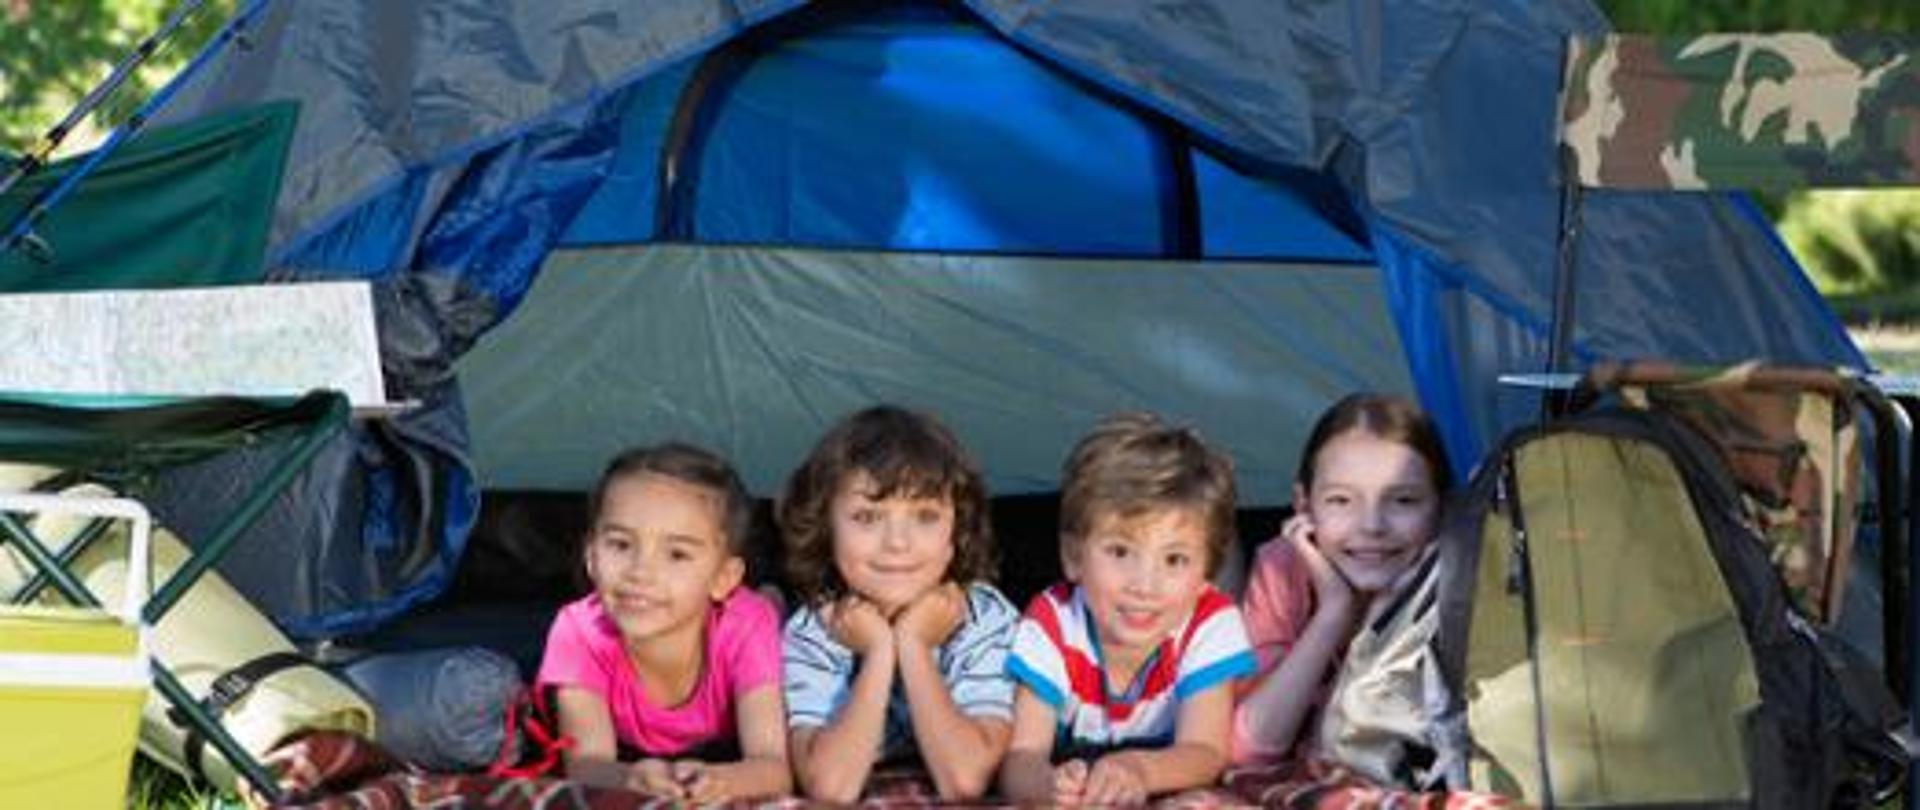 Czwórka uśmiechniętych dzieci w namiocie